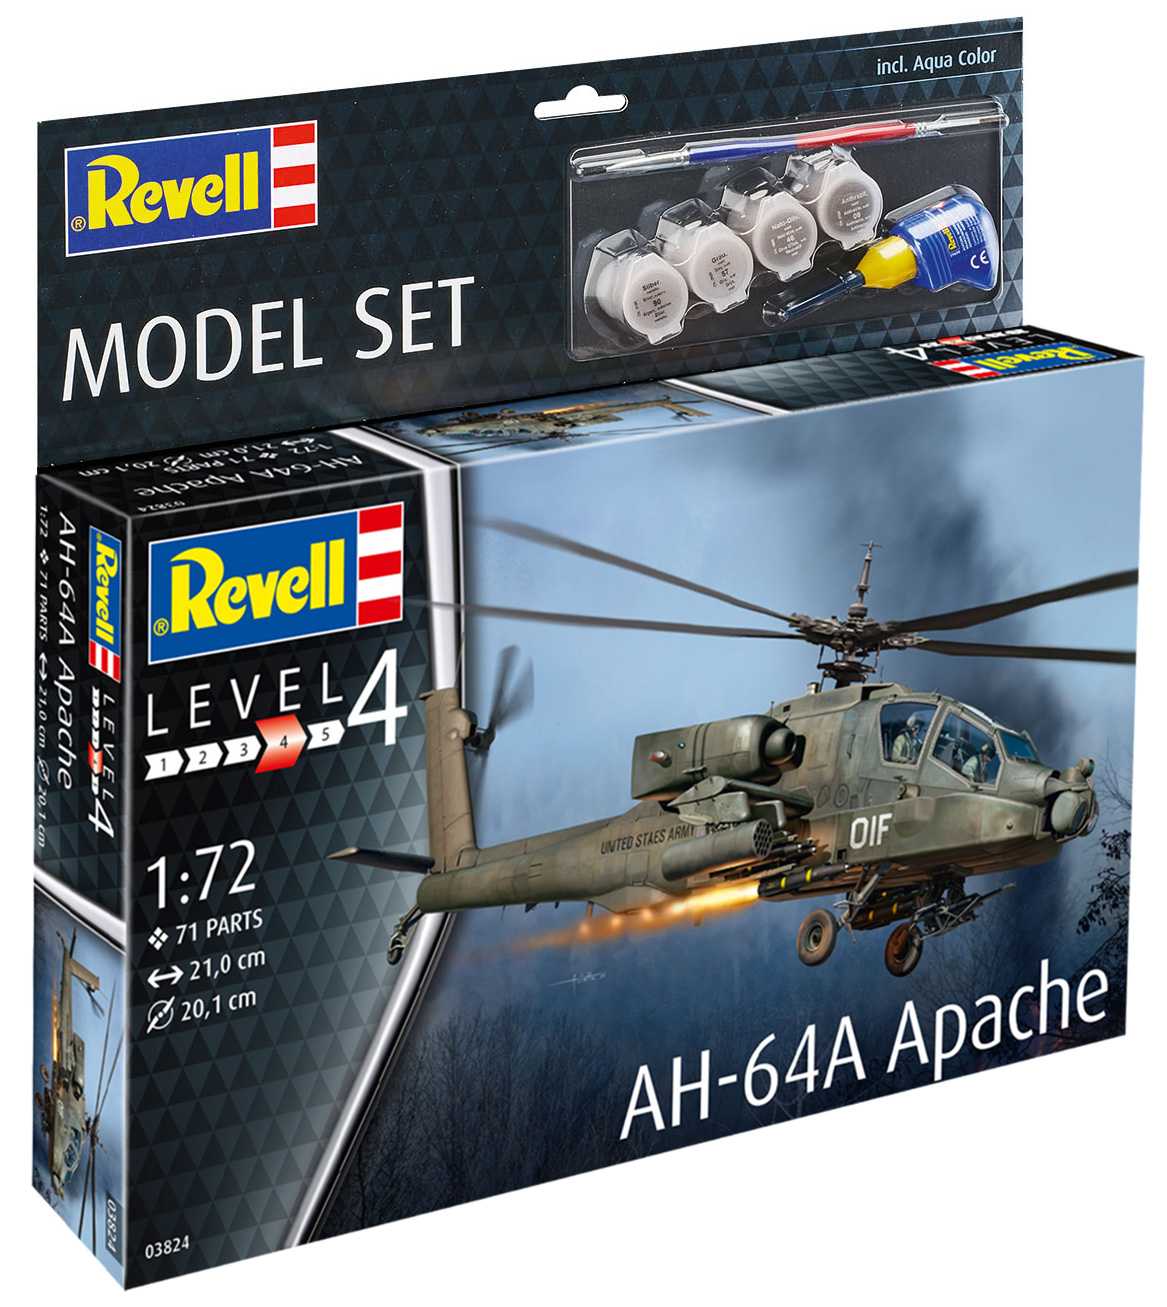 Set Vrtulníku AH-64A Apache (Revell 1:72)